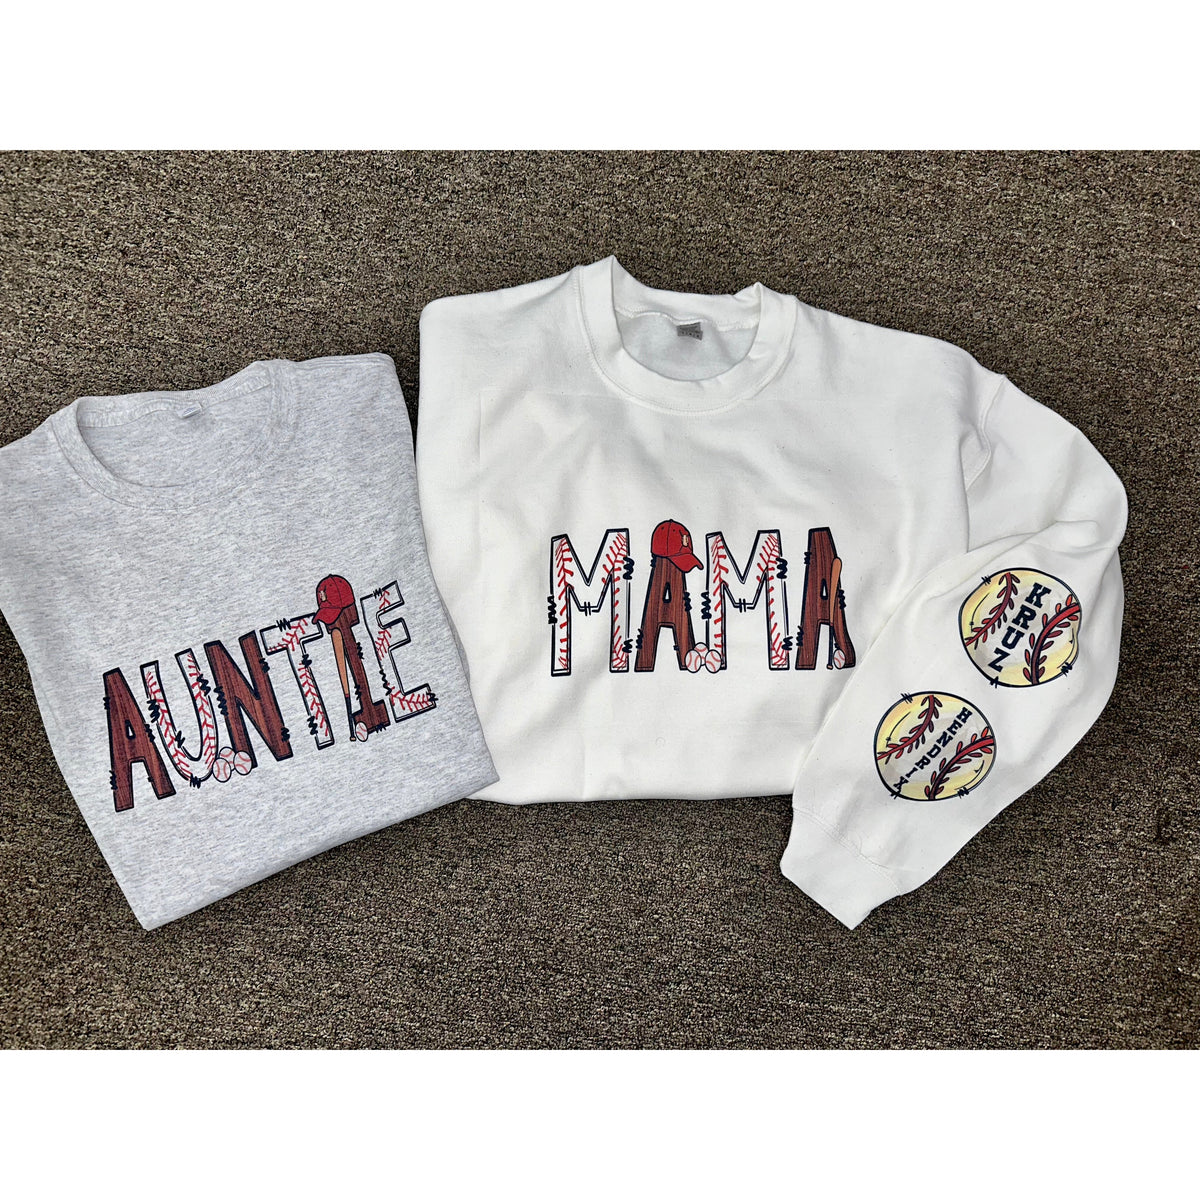 Baseball Mama, Mom,Aunt or auntie tee or sweatshirt